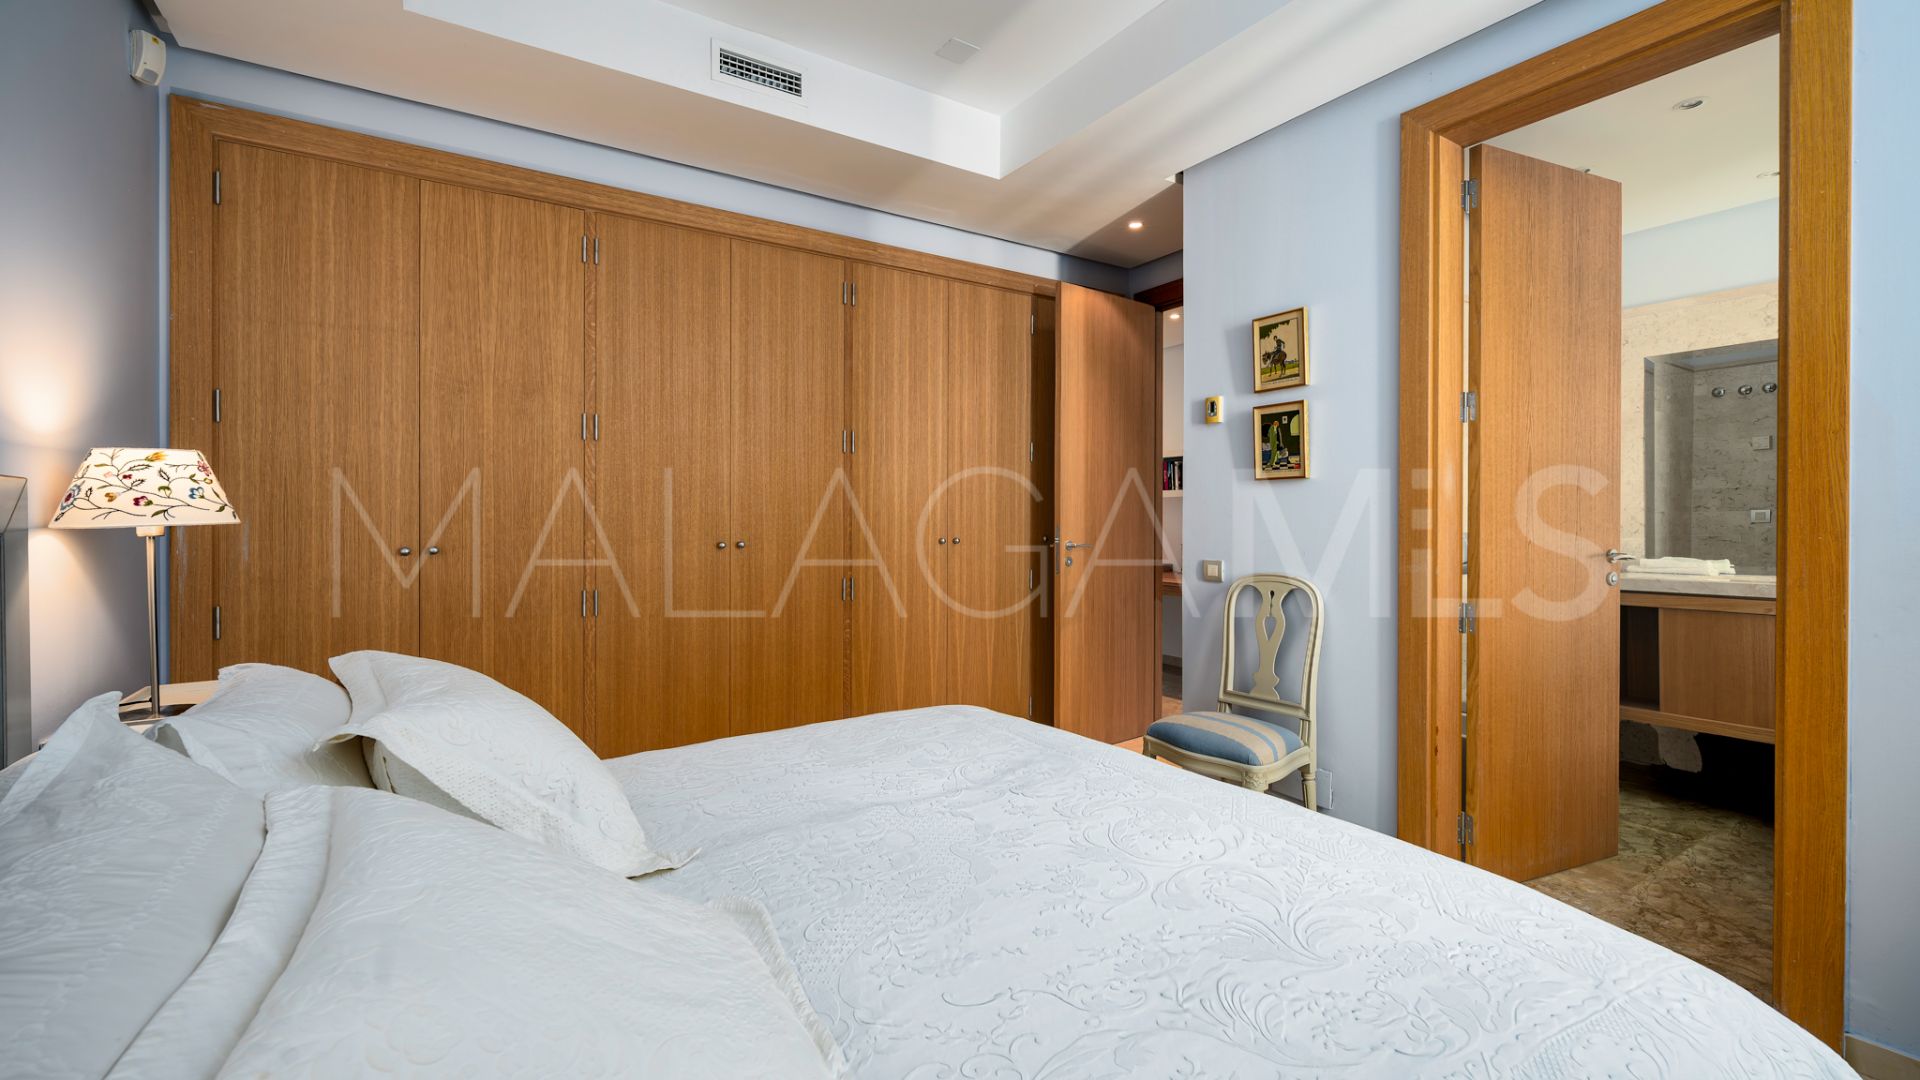 Buy Imara 3 bedrooms apartment